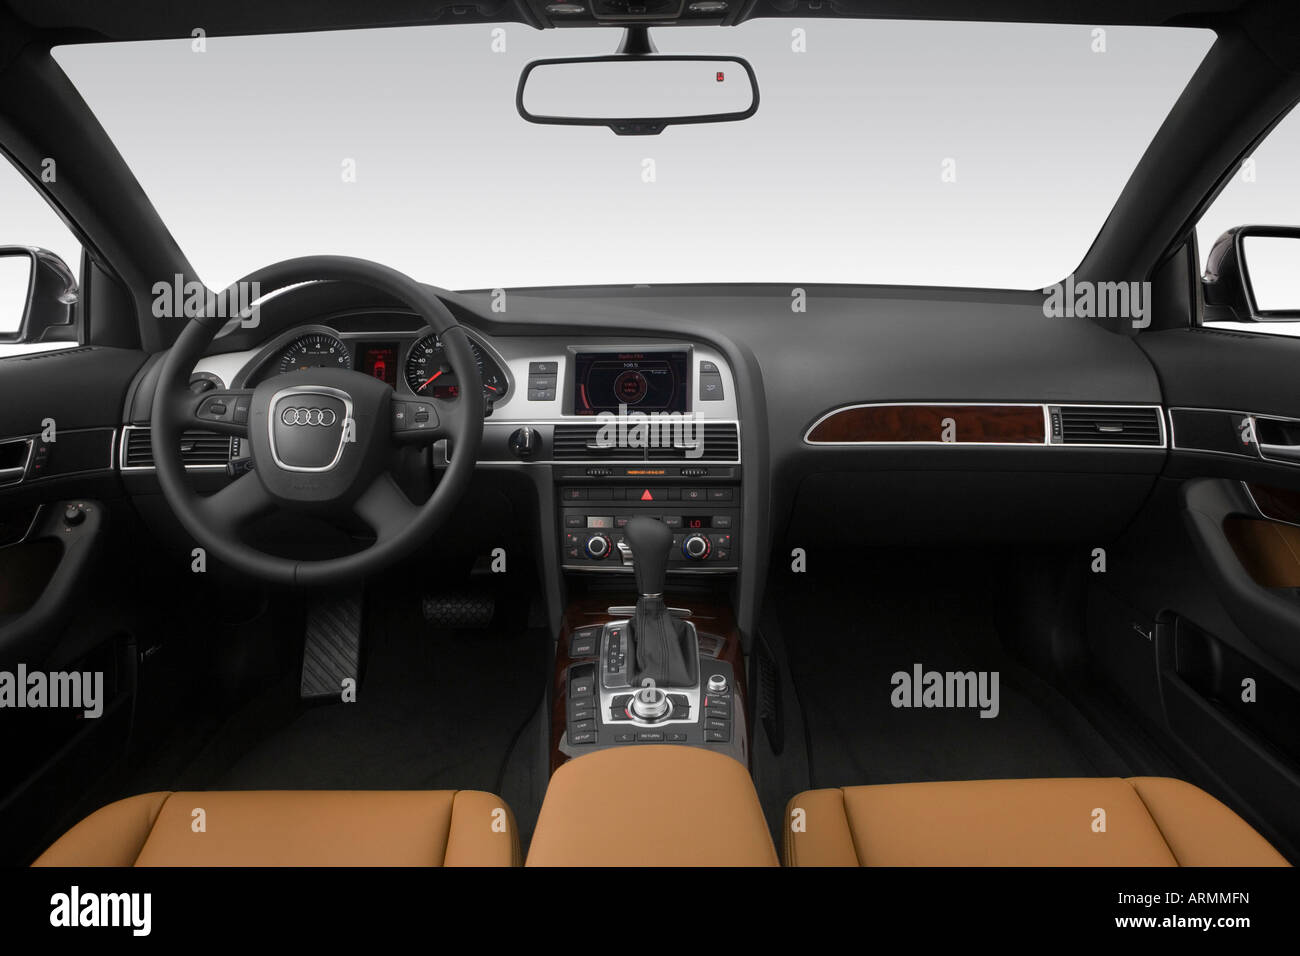 2008 Audi A6 3.2 en gris - planche de bord, console centrale, le levier de vitesses voir Banque D'Images